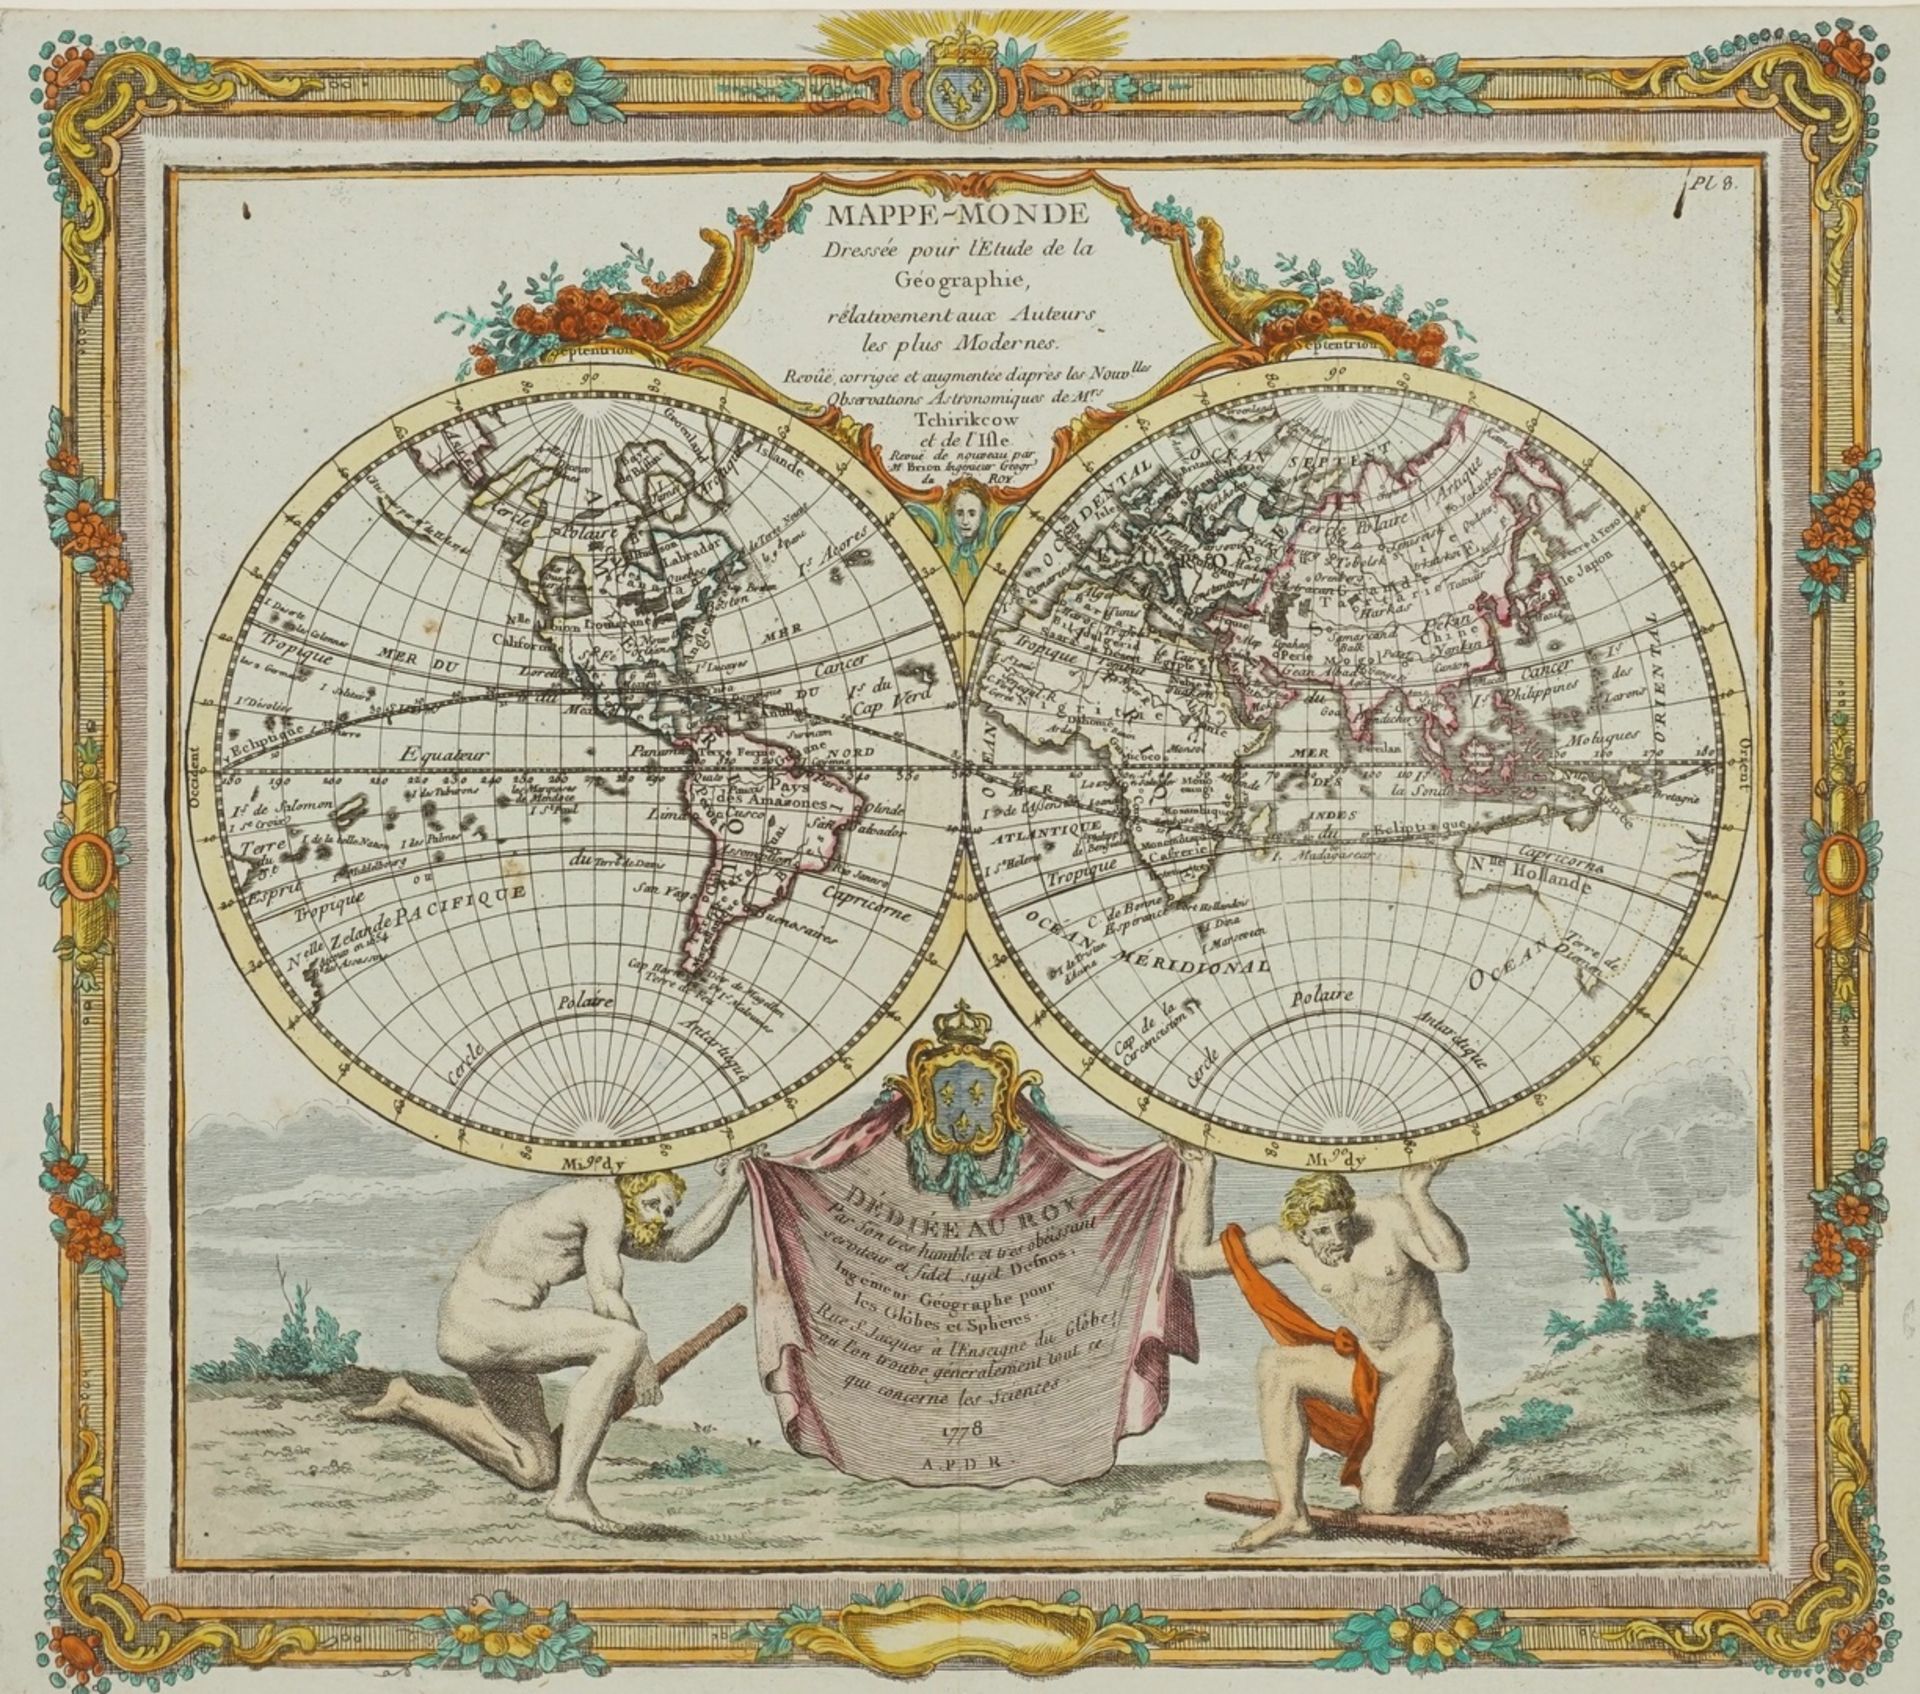 Louis Charles Desnos, "Mappe-Monde dressée pour l'Etude de la Géographie"